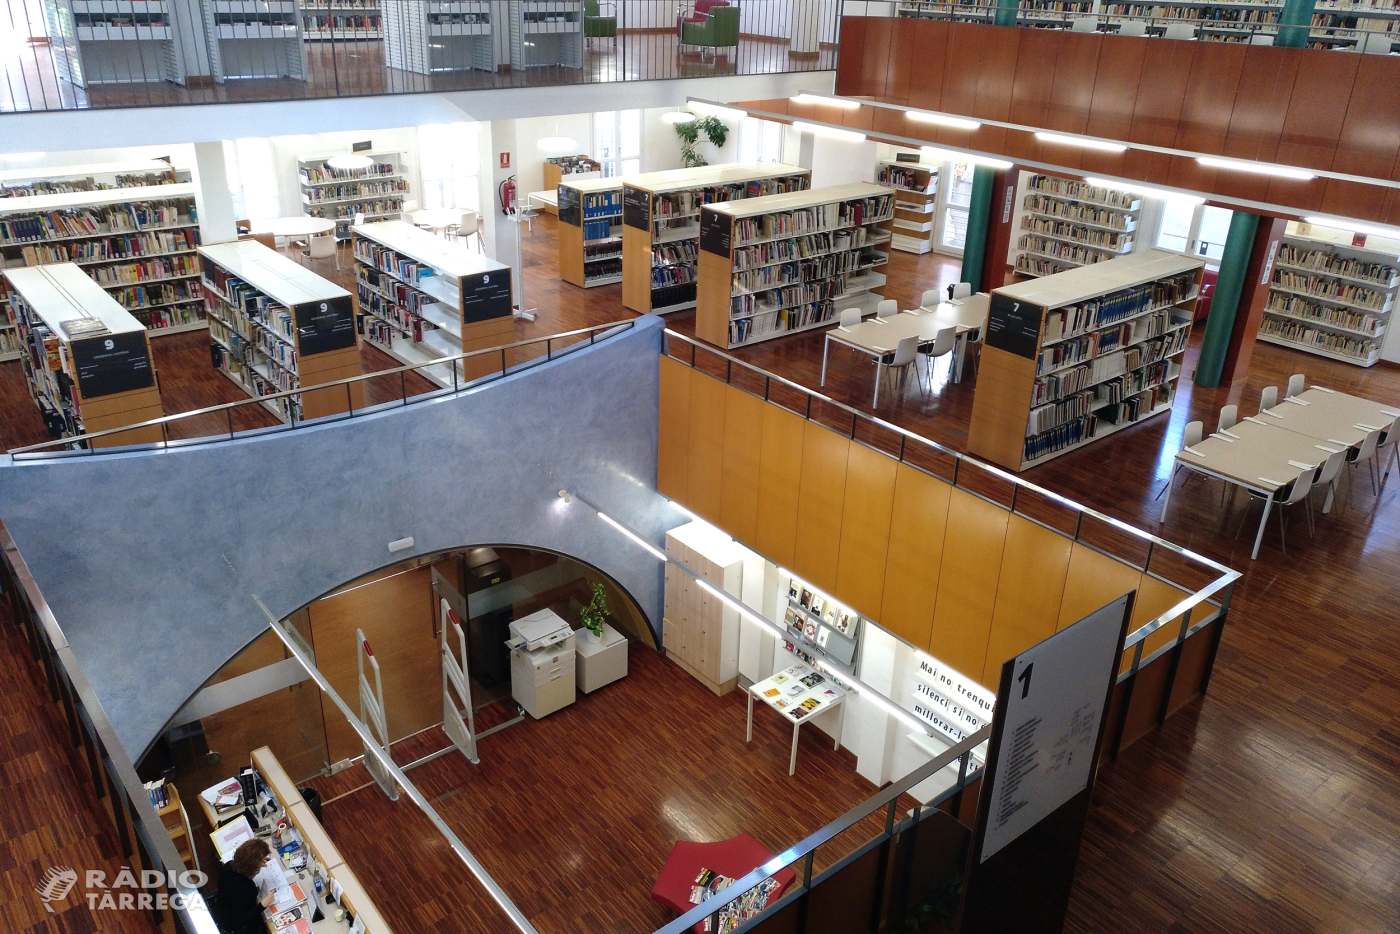 La Biblioteca Comarcal de Tàrrega celebra el seu 25è aniversari com a focus de cultura, ciutadania i divulgació